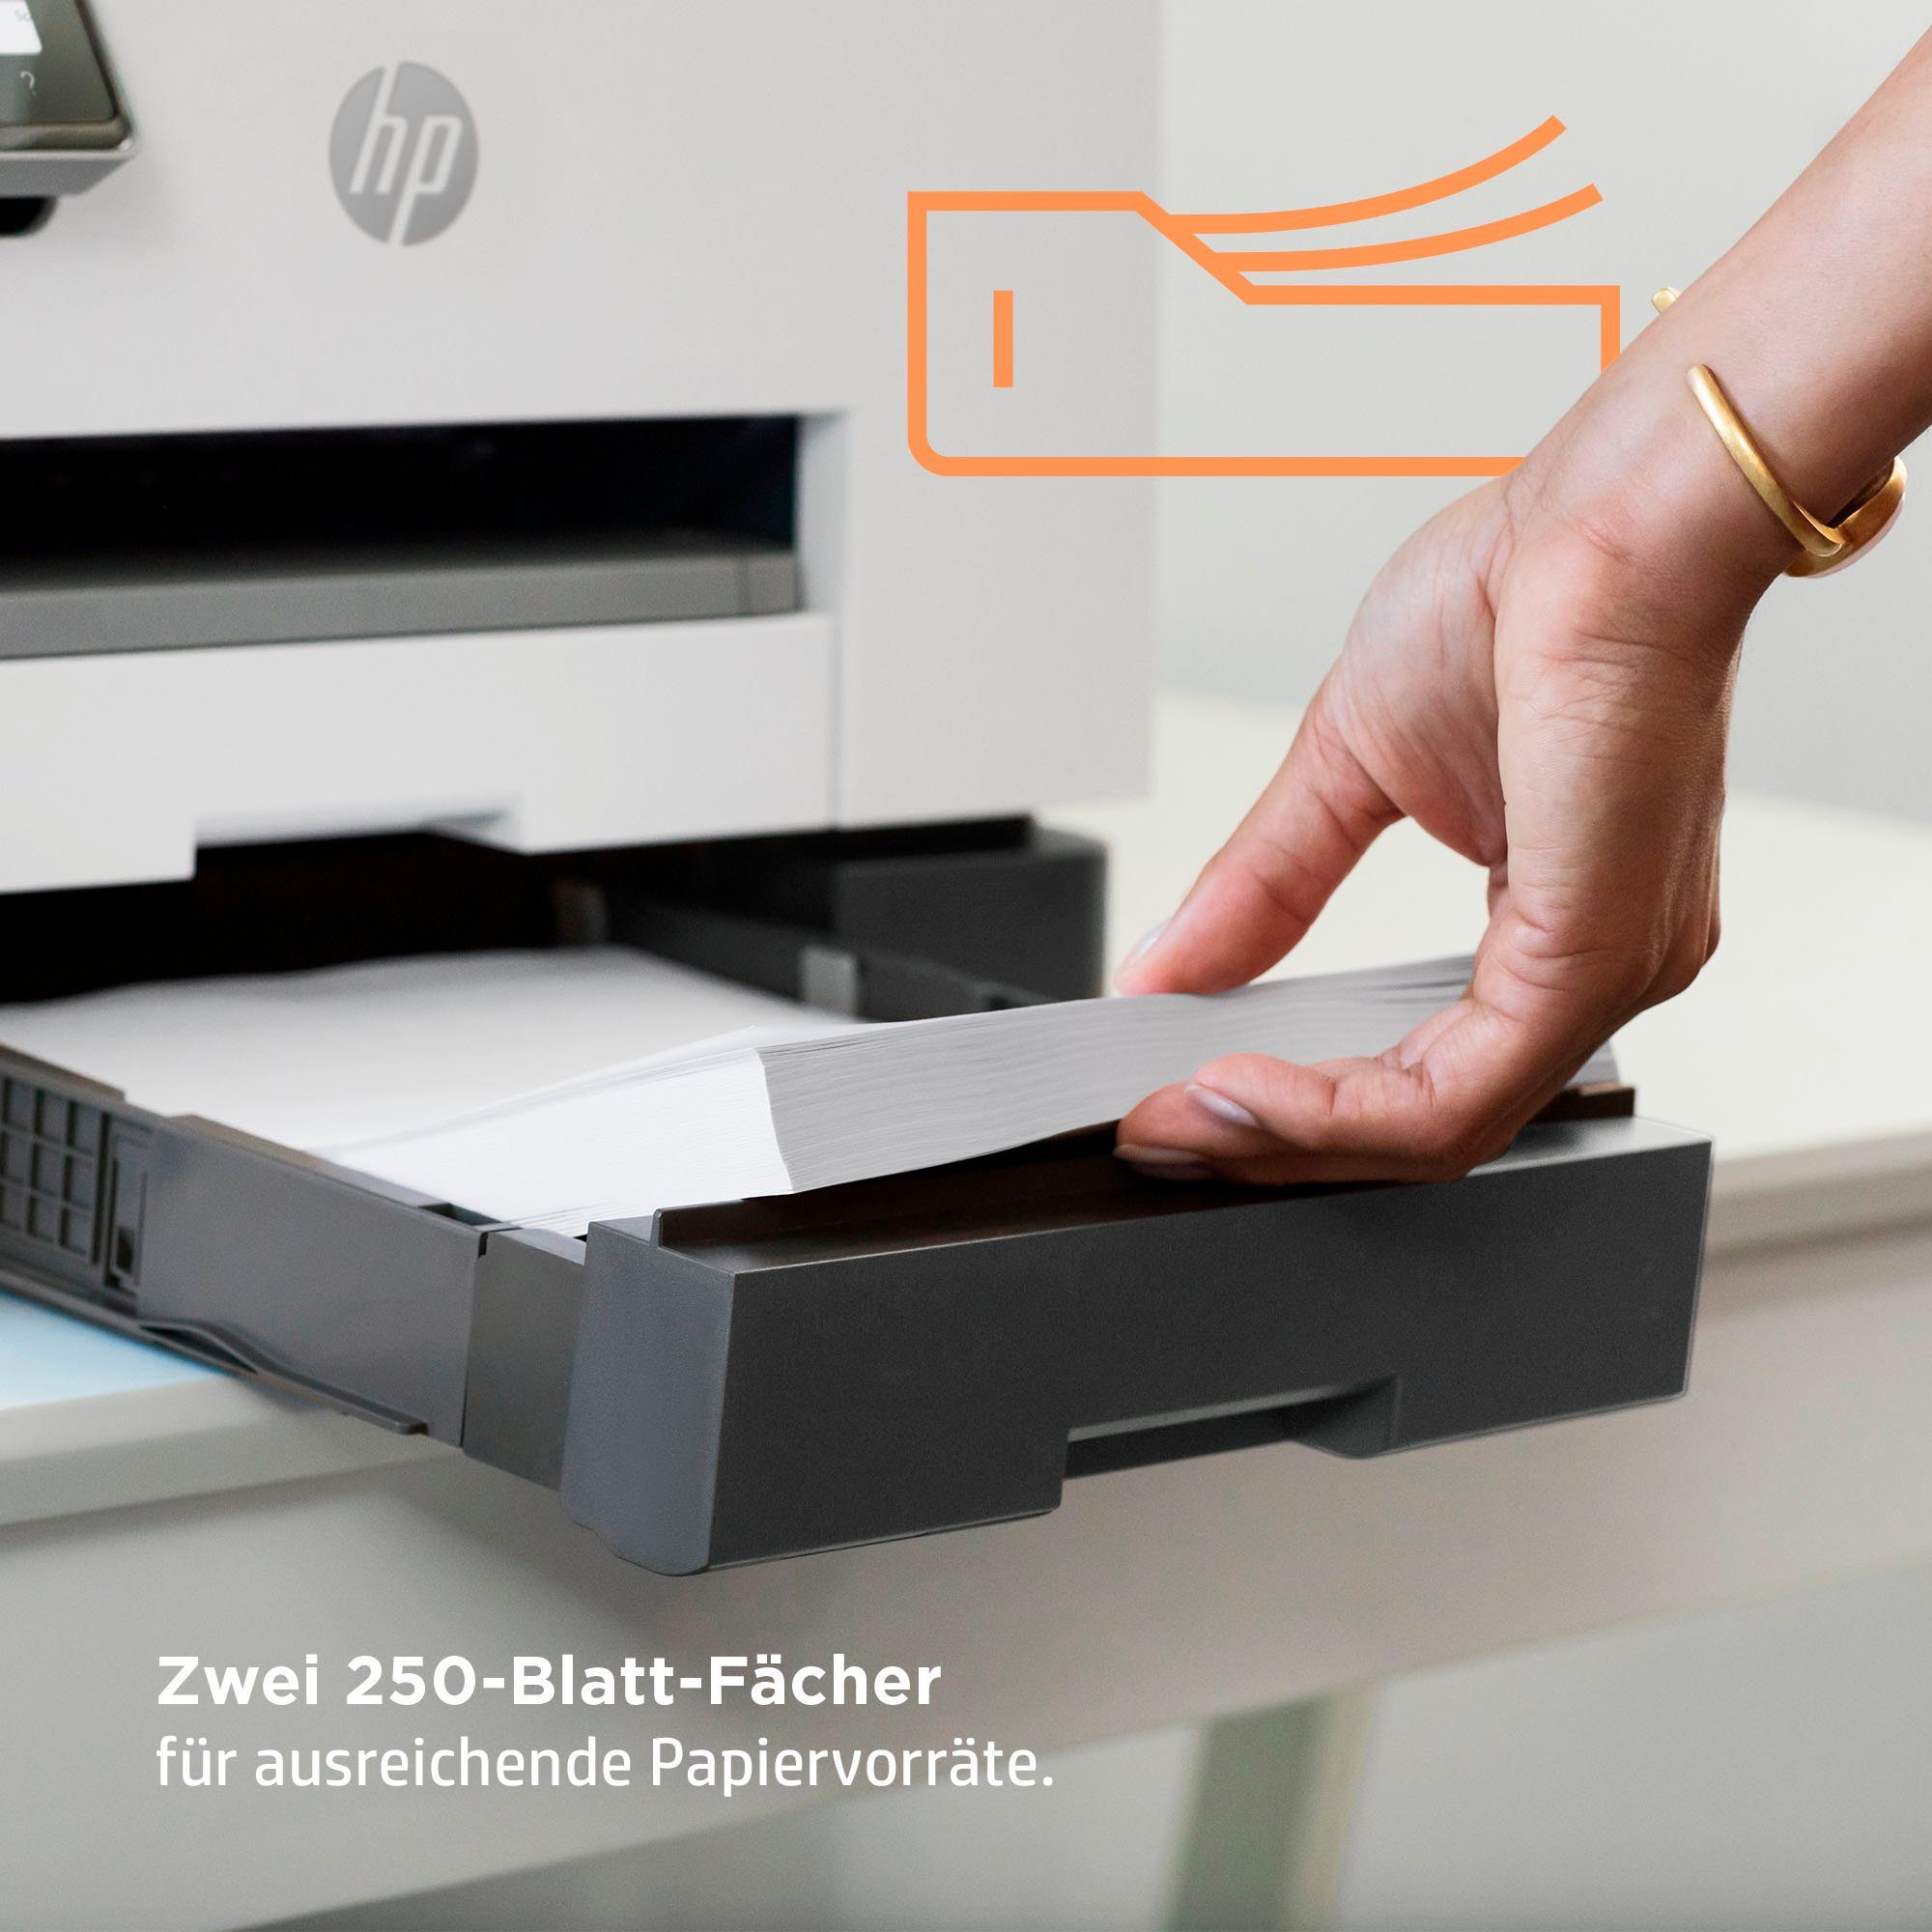 AiO Instant (Wi-Fi), HP+ kompatibel) (LAN 9022e OfficeJet A4 (Ethernet), color WLAN Ink Multifunktionsdrucker, HP Pro